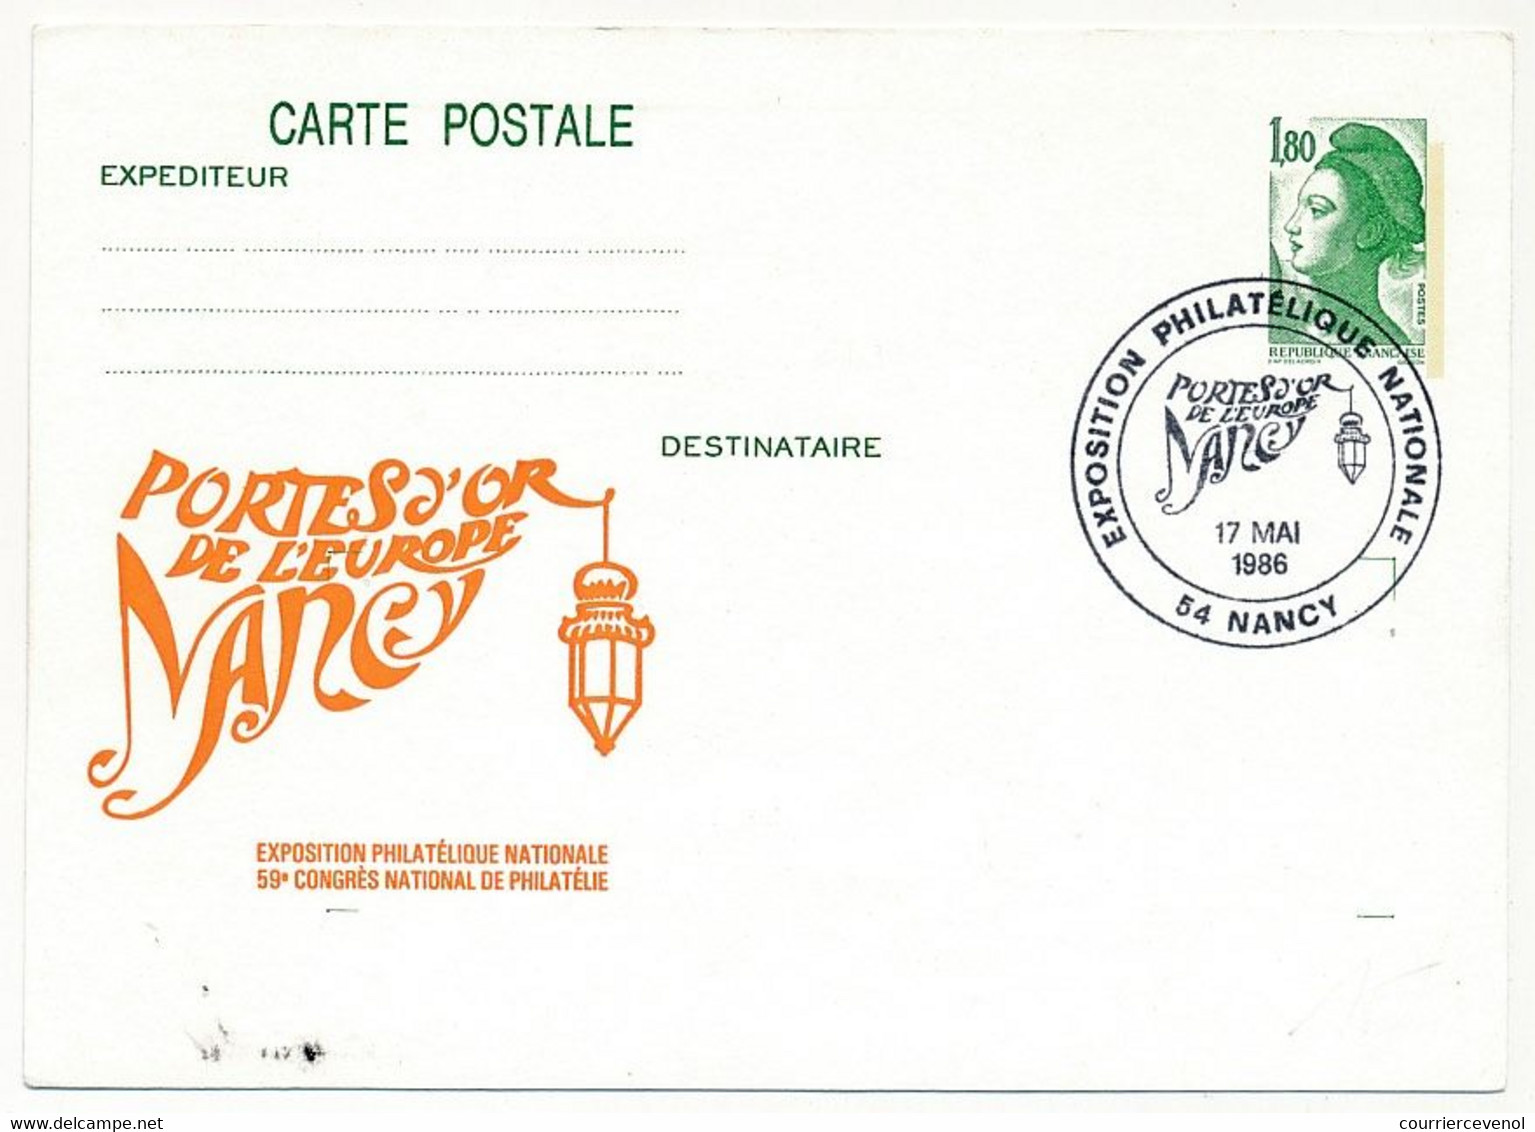 Entier Repiqué - C.P. 1,80 Liberté - Exposition Philatélique Nationale Portes D'Or De L'Europe NANCY - 17 Mai 1986 - AK Mit Aufdruck (vor 1995)